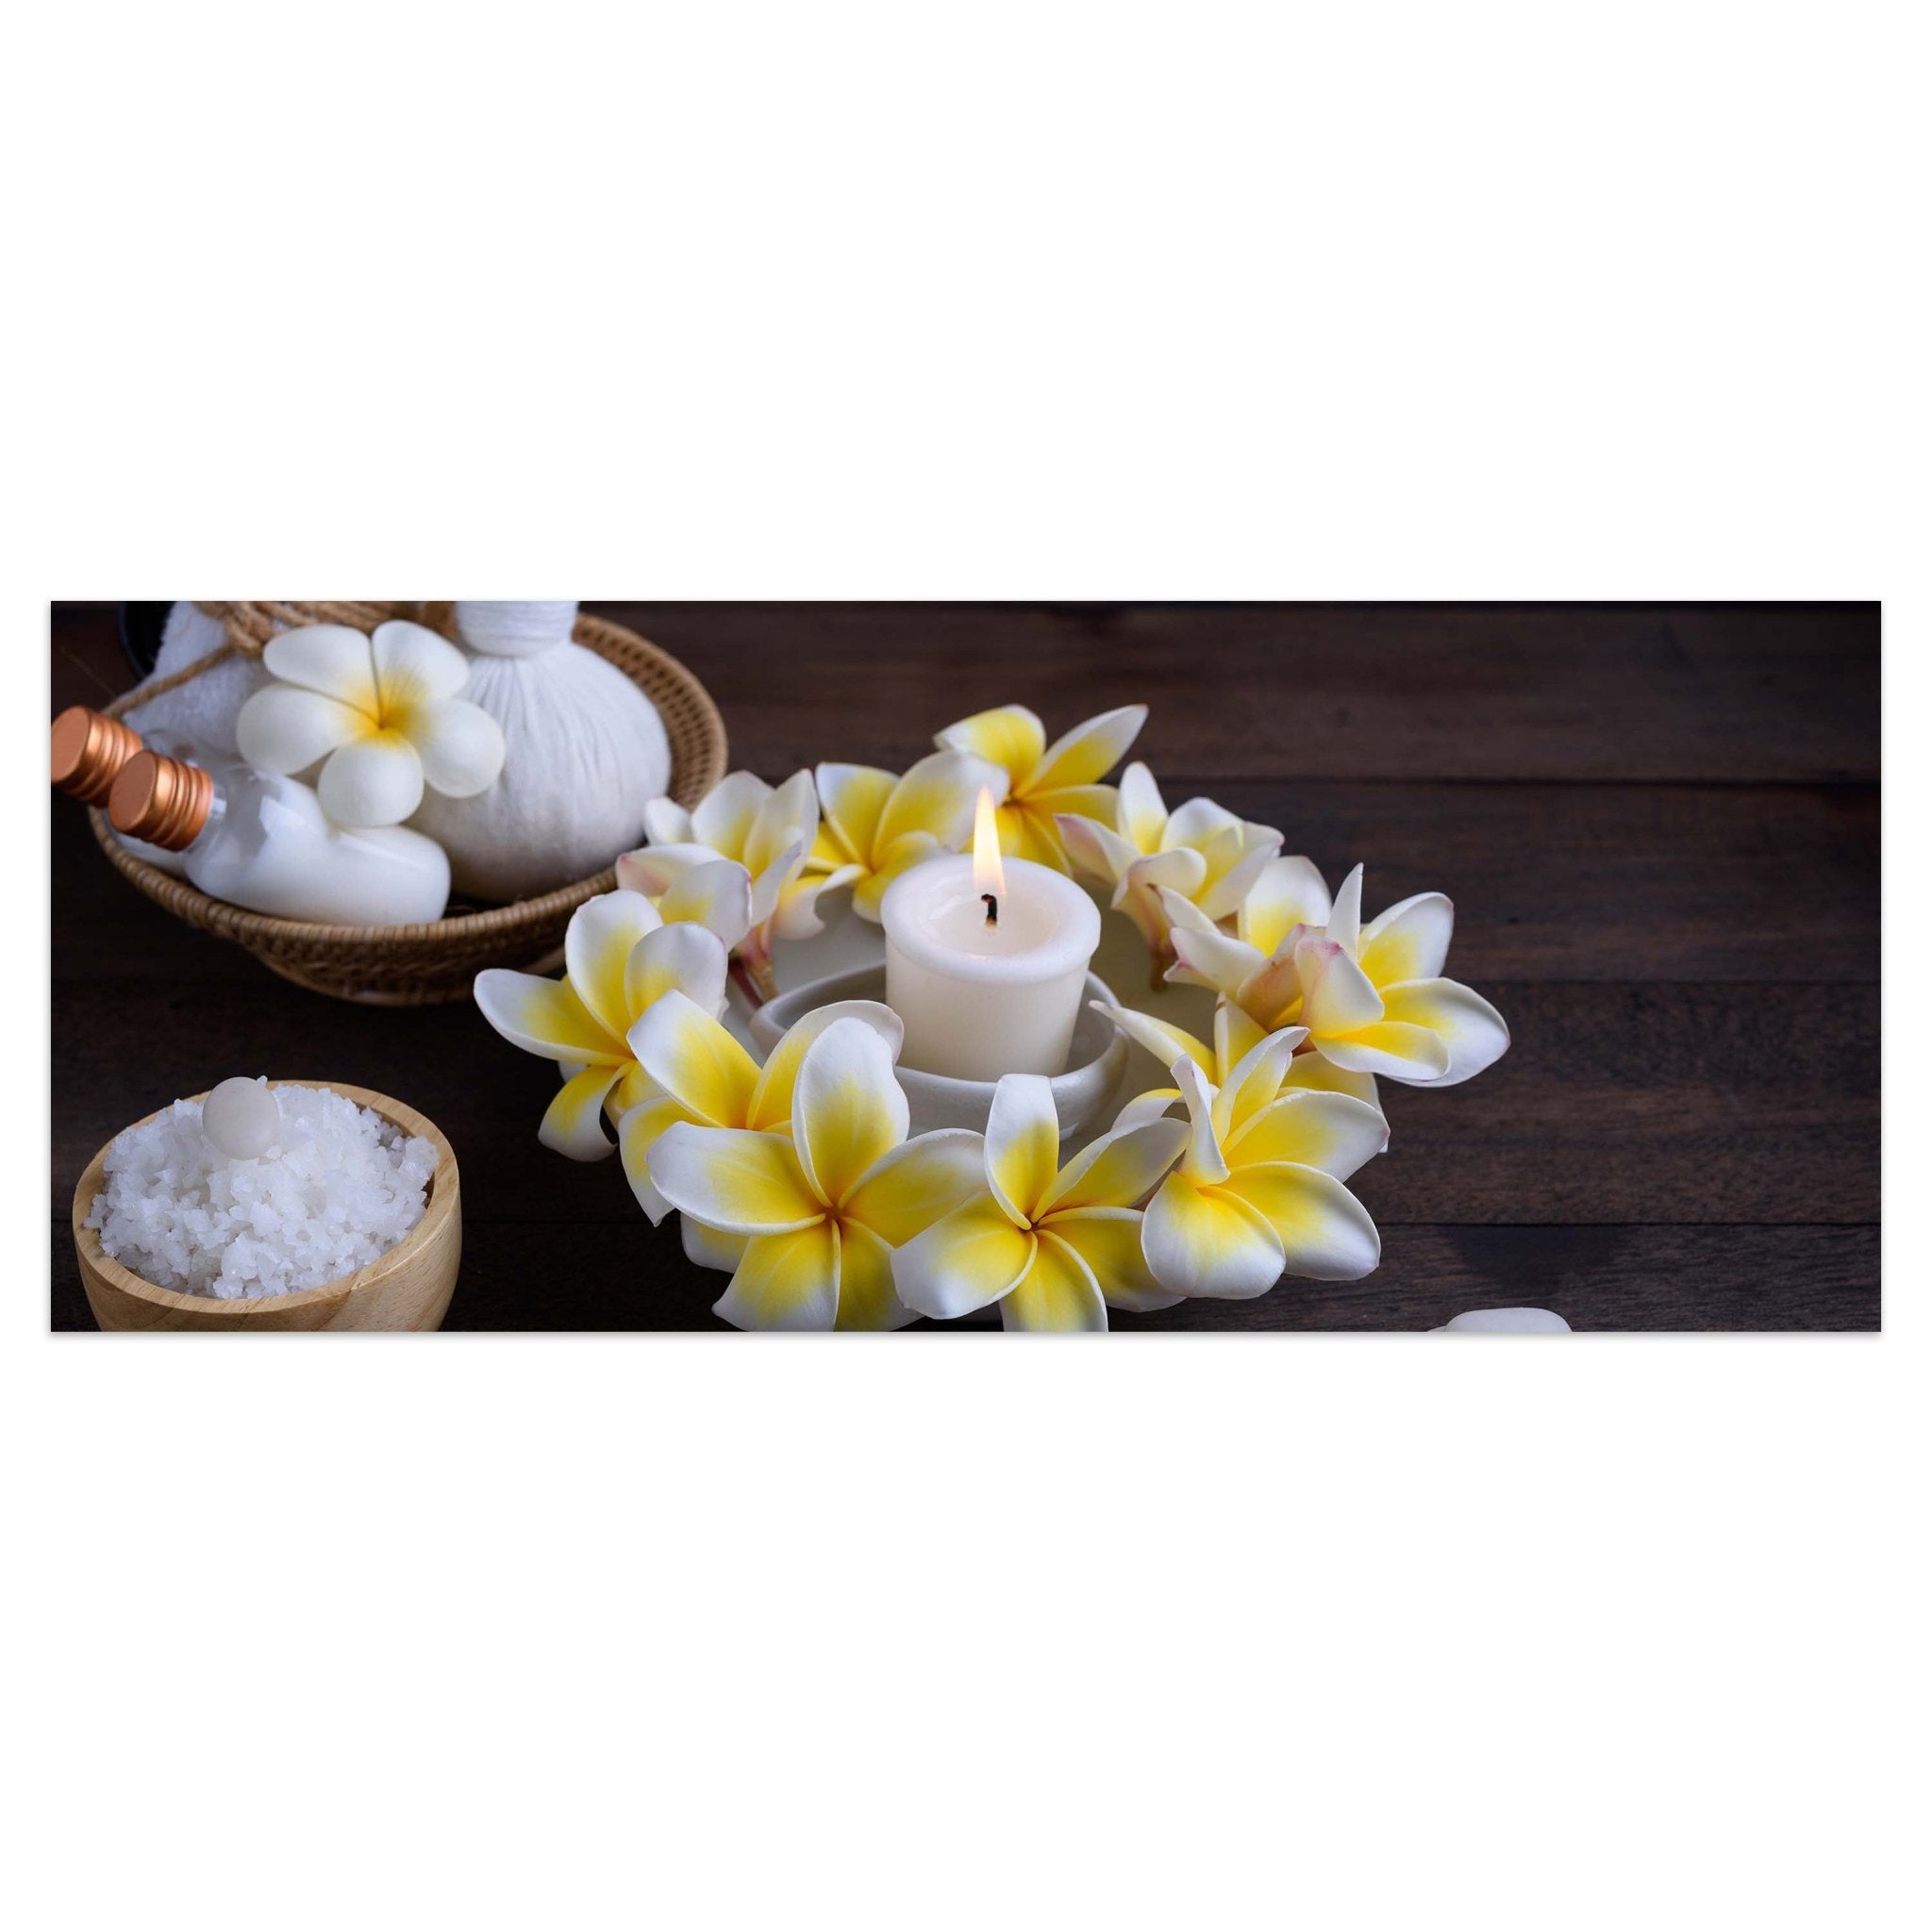 Leinwandbild Frangipani Blumen - Spa und Wellness M0977 kaufen - Bild 1